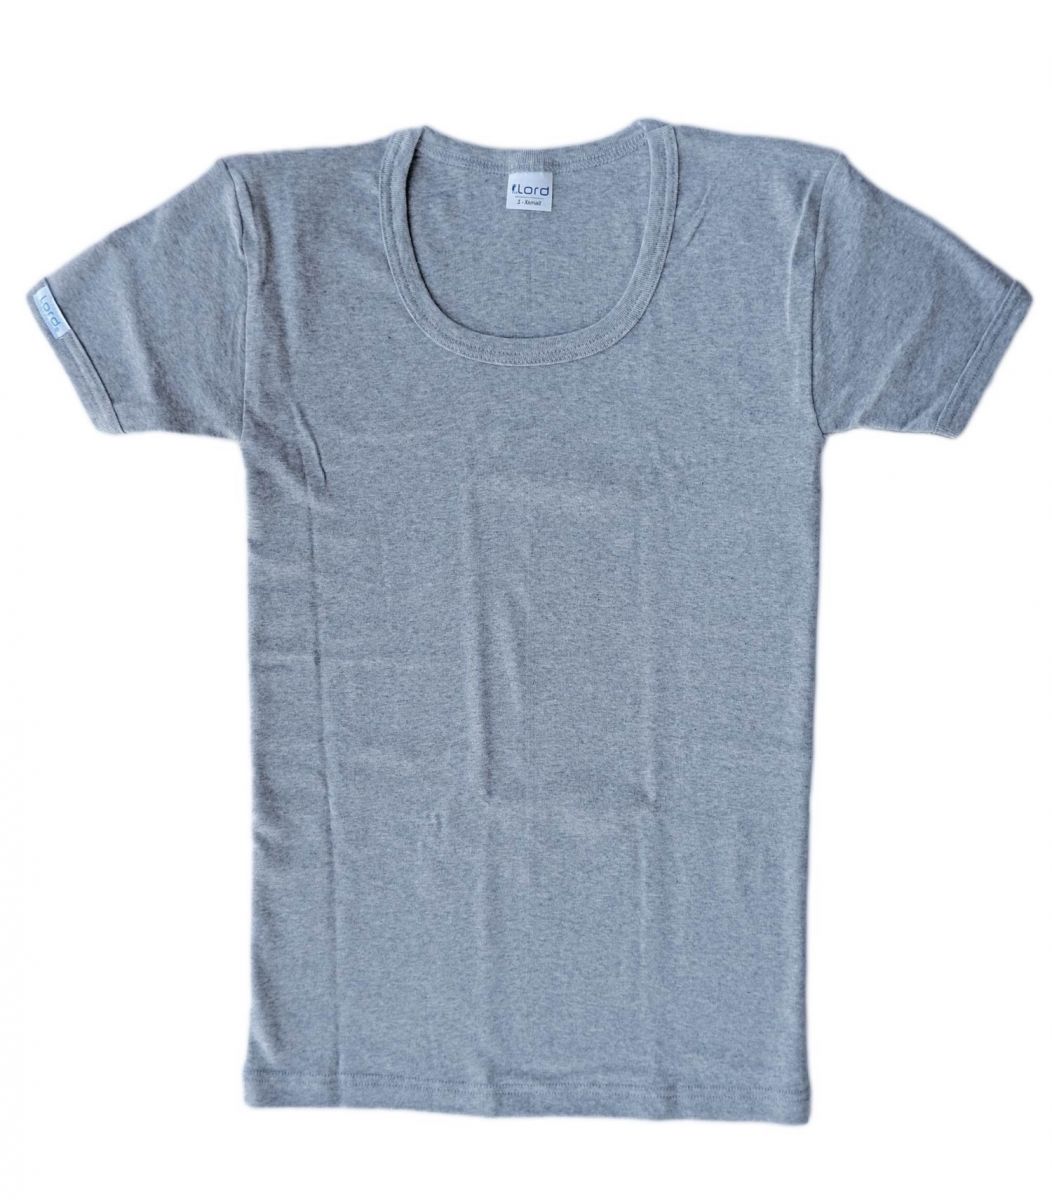 T-Shirt, open neck, grey